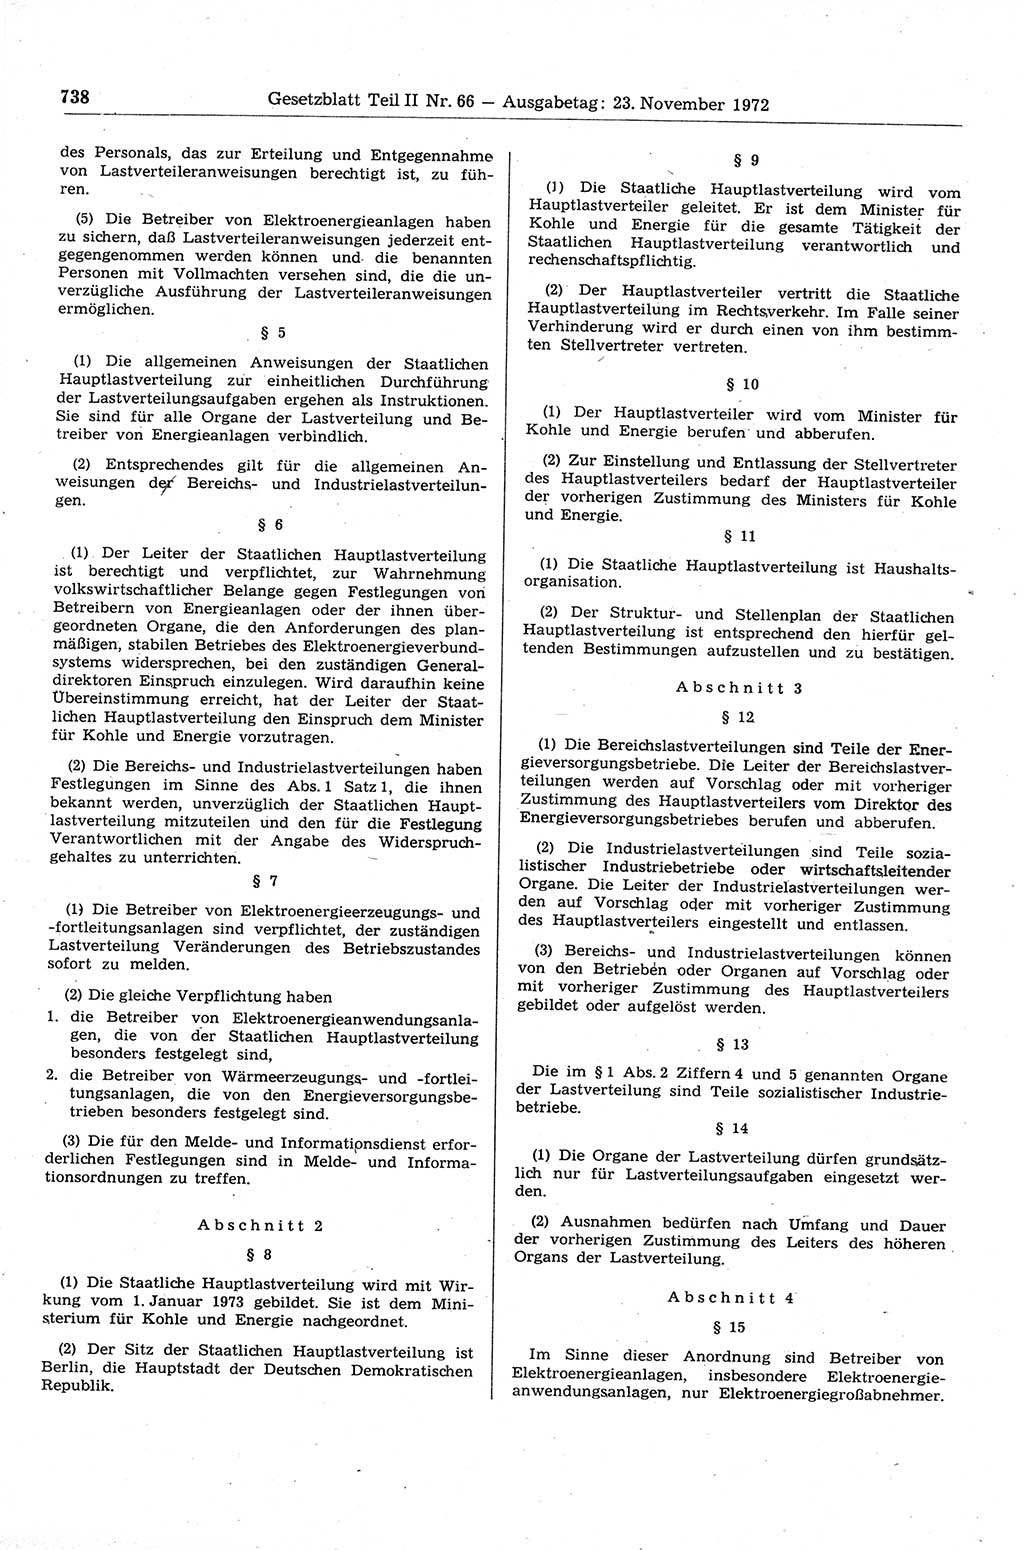 Gesetzblatt (GBl.) der Deutschen Demokratischen Republik (DDR) Teil ⅠⅠ 1972, Seite 738 (GBl. DDR ⅠⅠ 1972, S. 738)